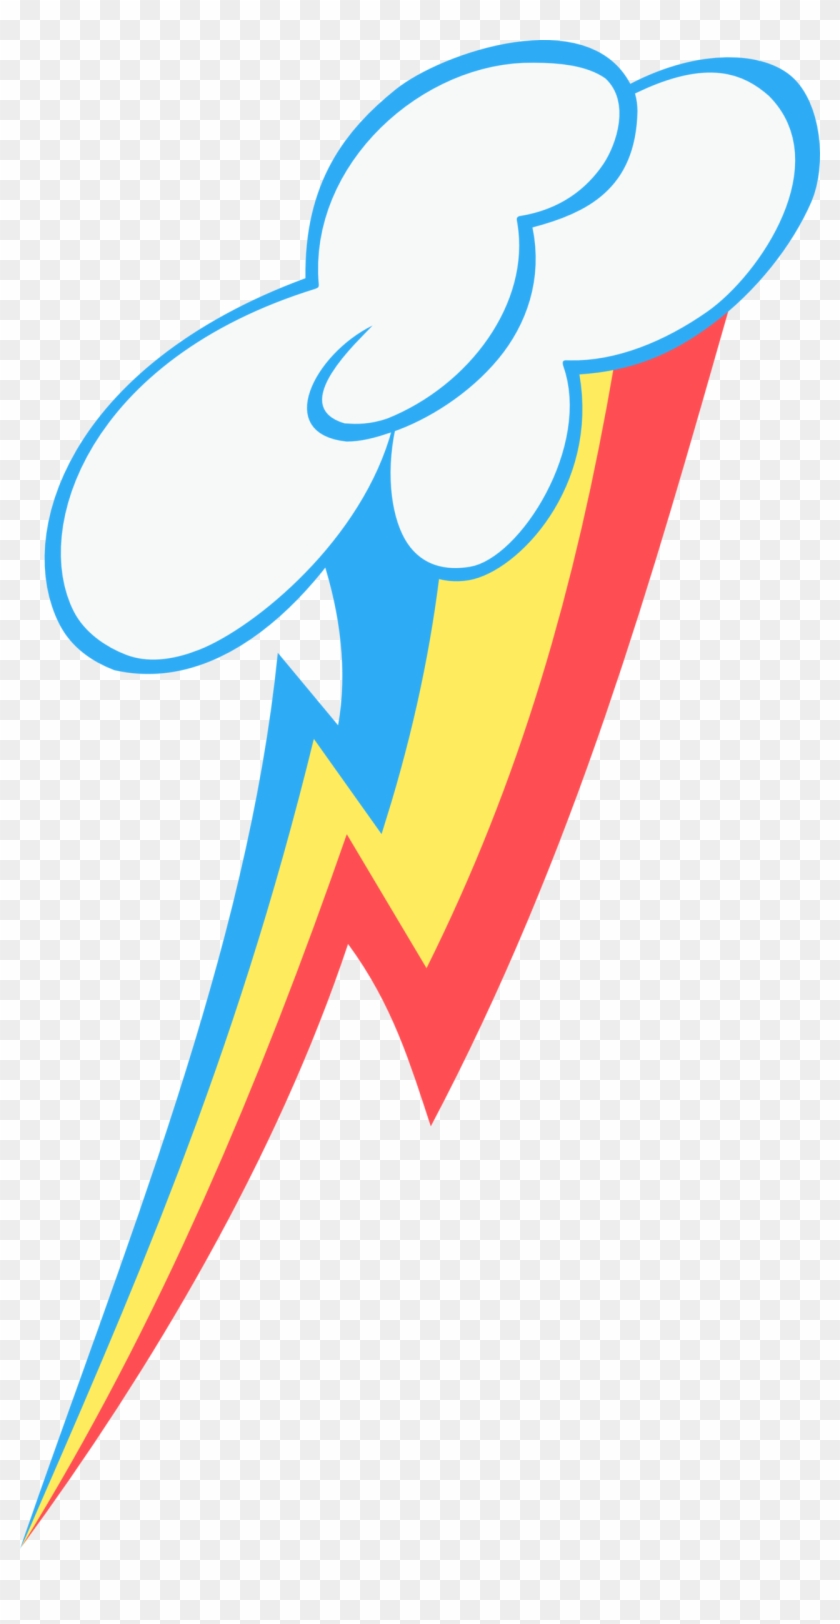 Rainbow Dash's Cutie Mark Vector By Arroyopl - My Little Pony Rainbow Dash Cutie Mark #645645